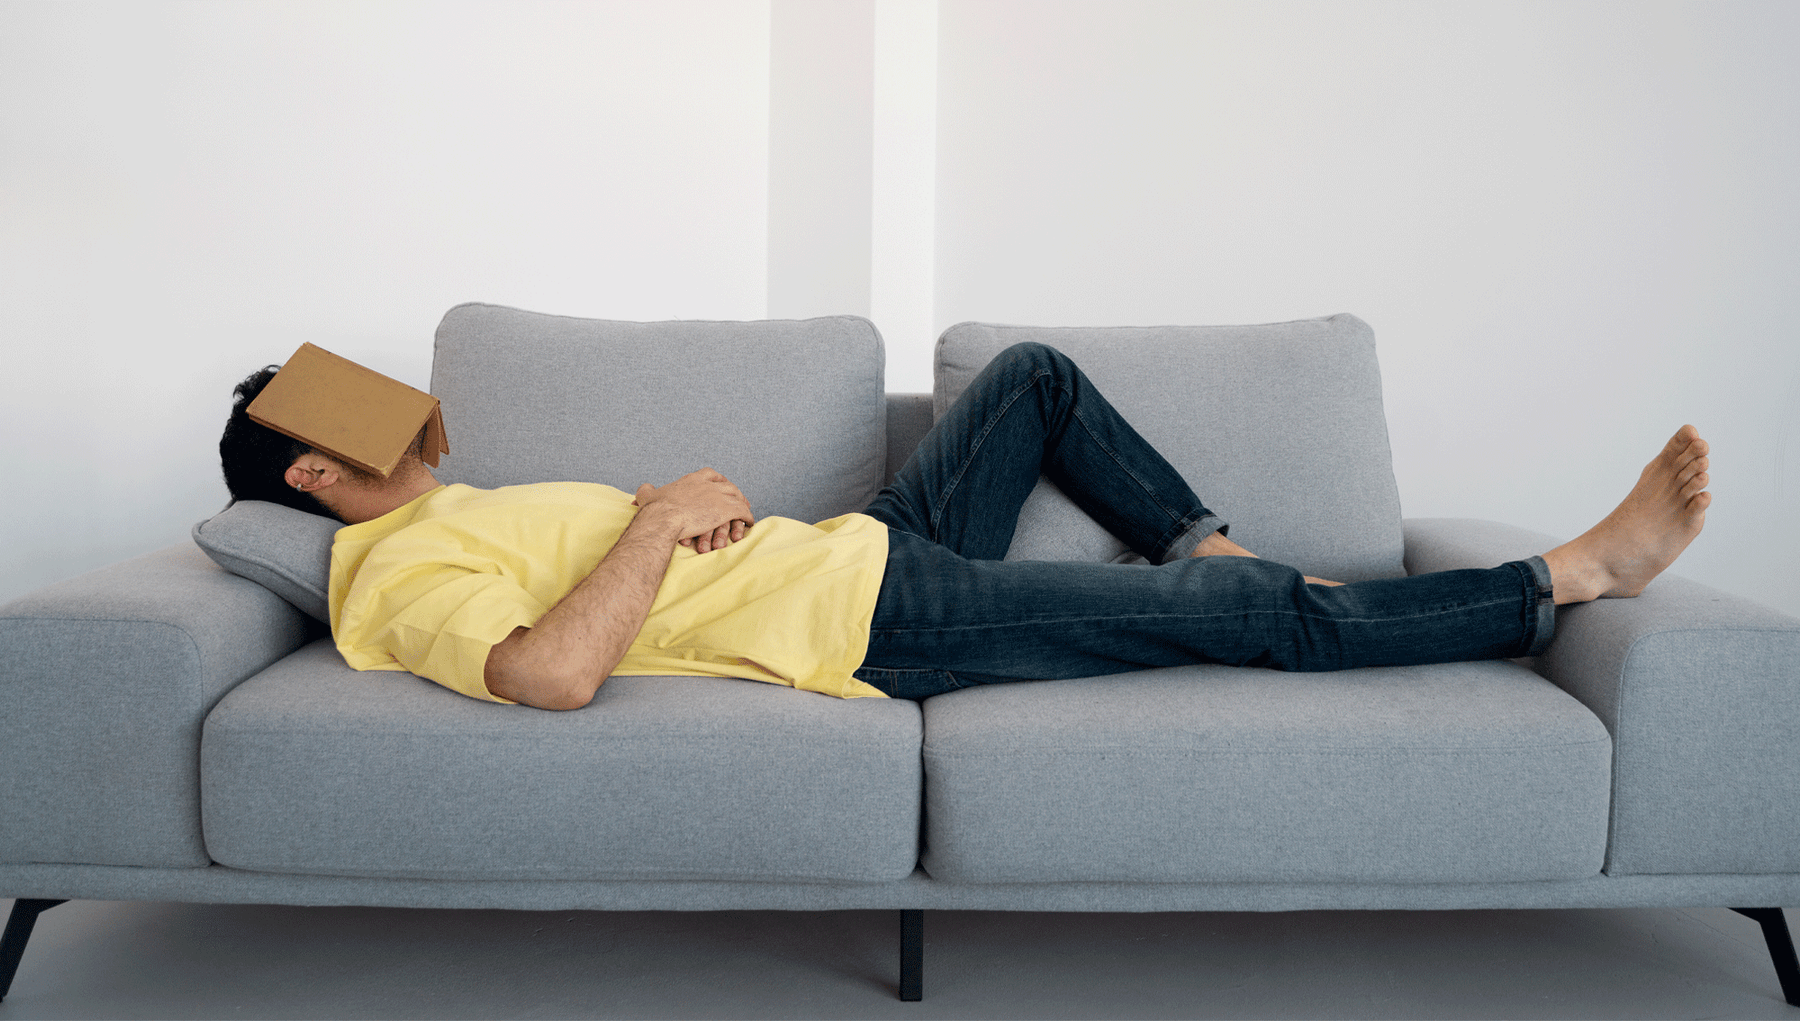 La importancia de buen sofá para descansar